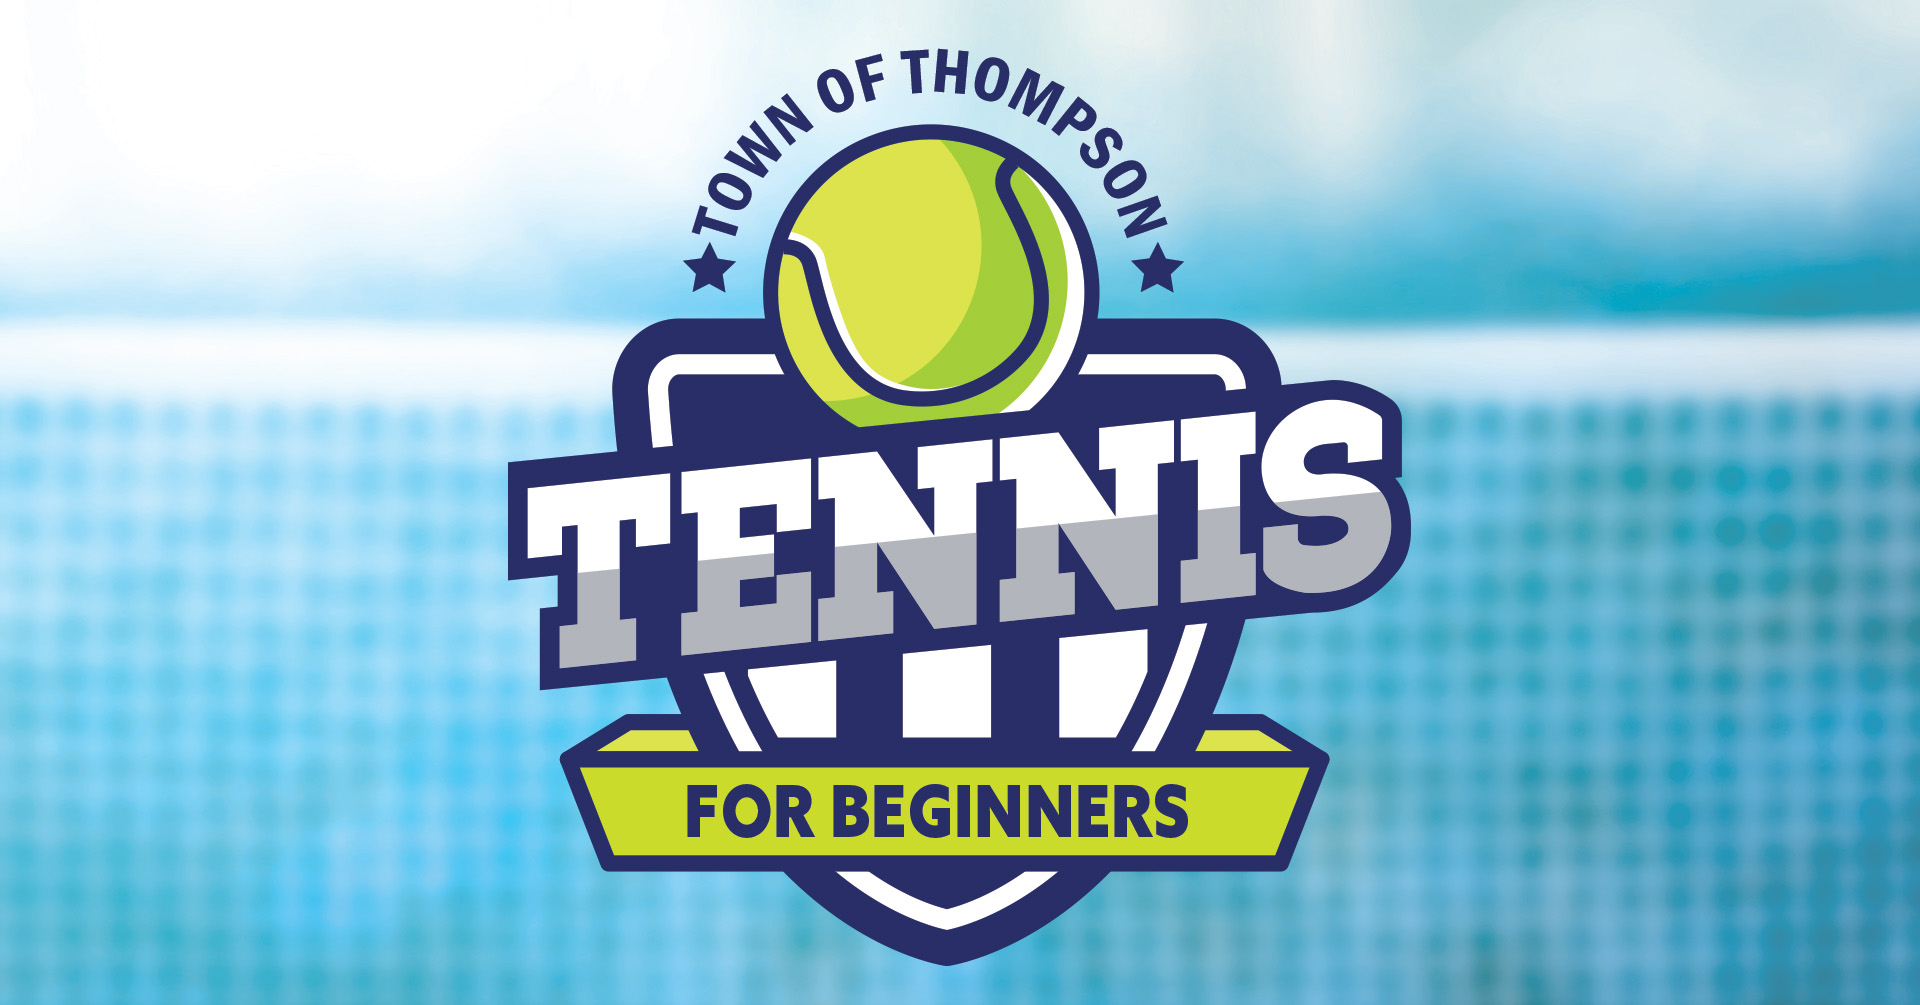 Thompson Beginner Tennis Lessons